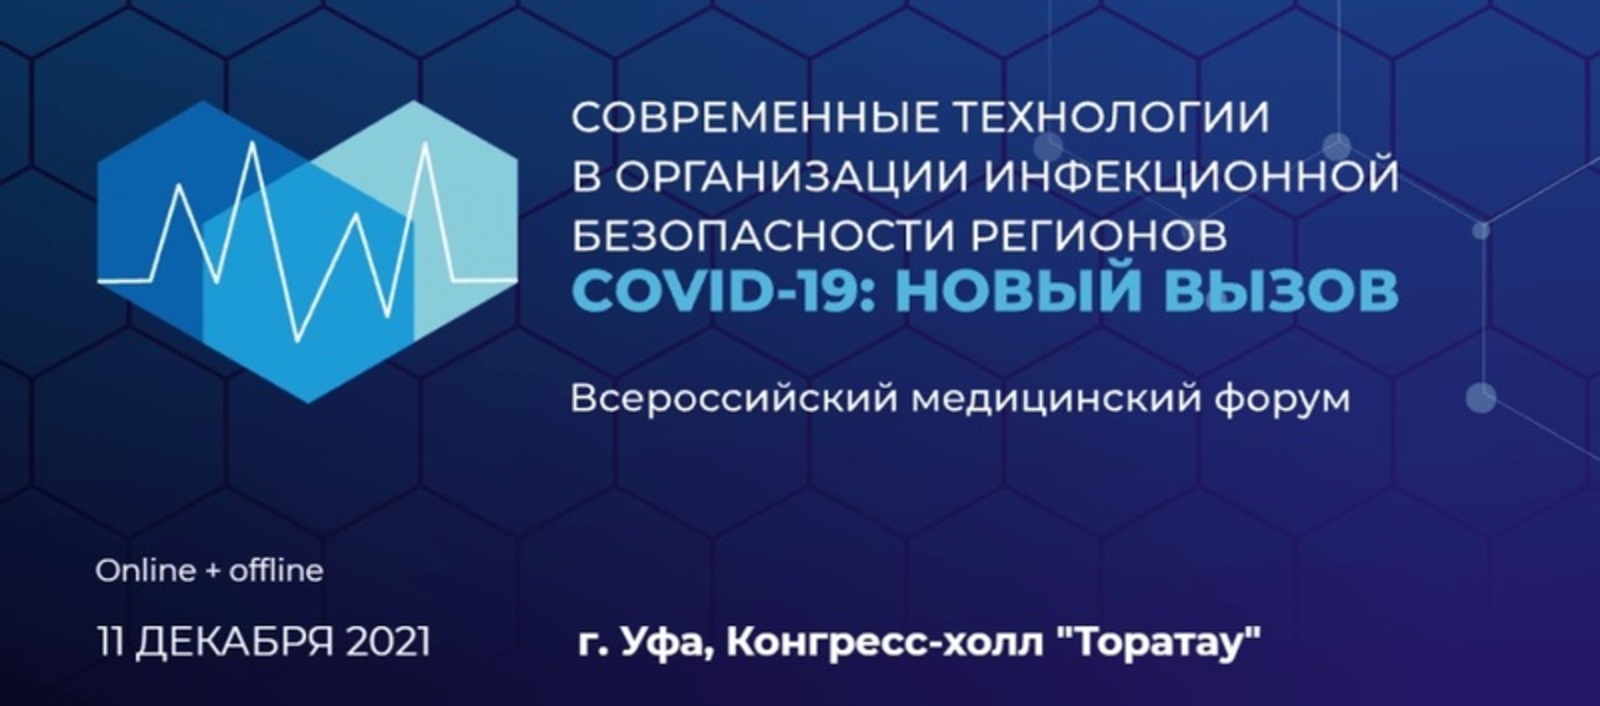 В Уфе пройдёт Всероссийский медицинский форум «COVID-19: новый вызов»